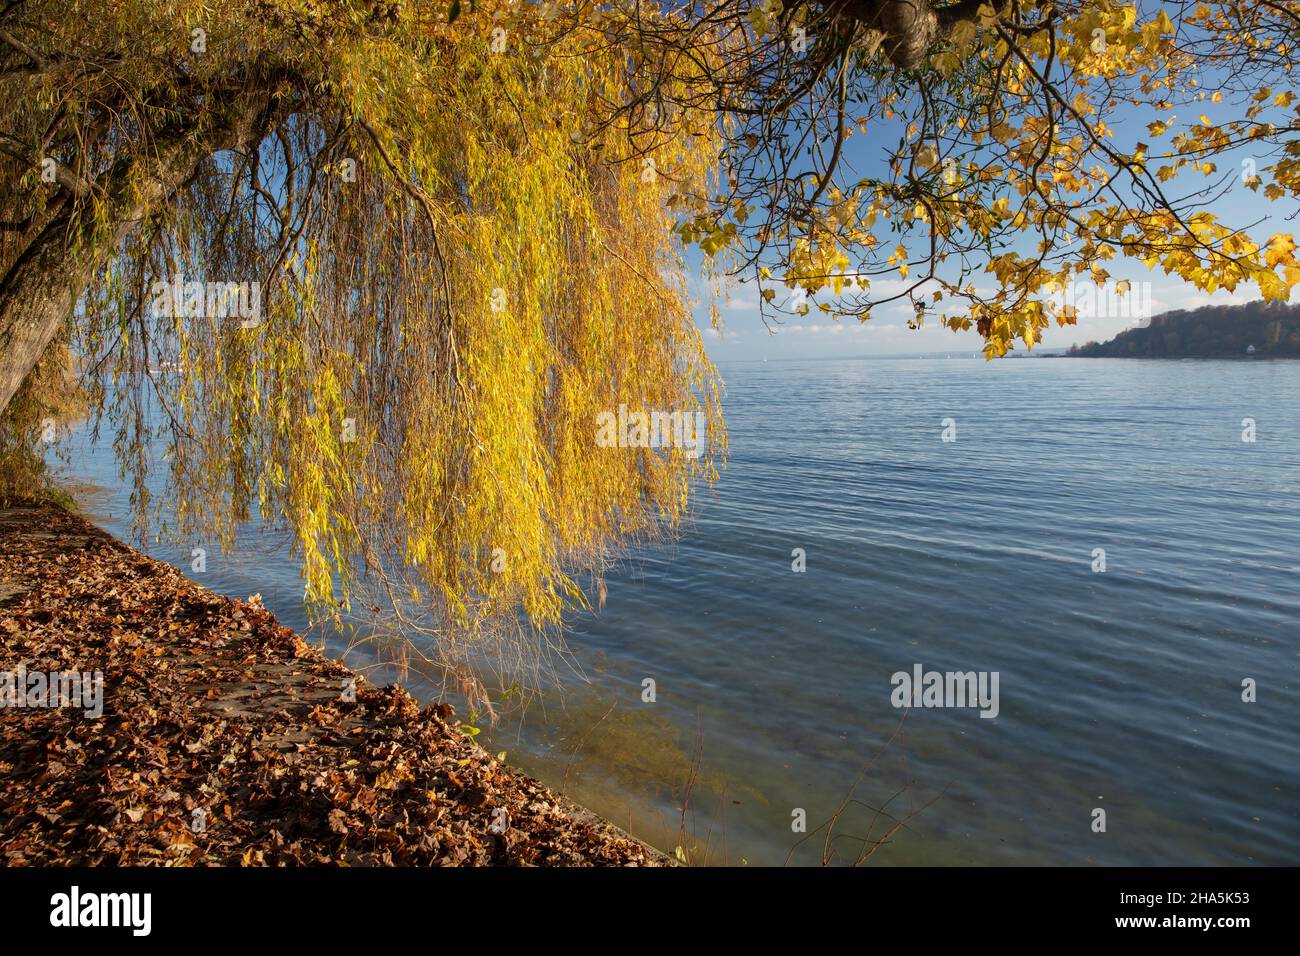 lago di costanza,mainau,isola,autunno dorato,estate indiana, Foto Stock